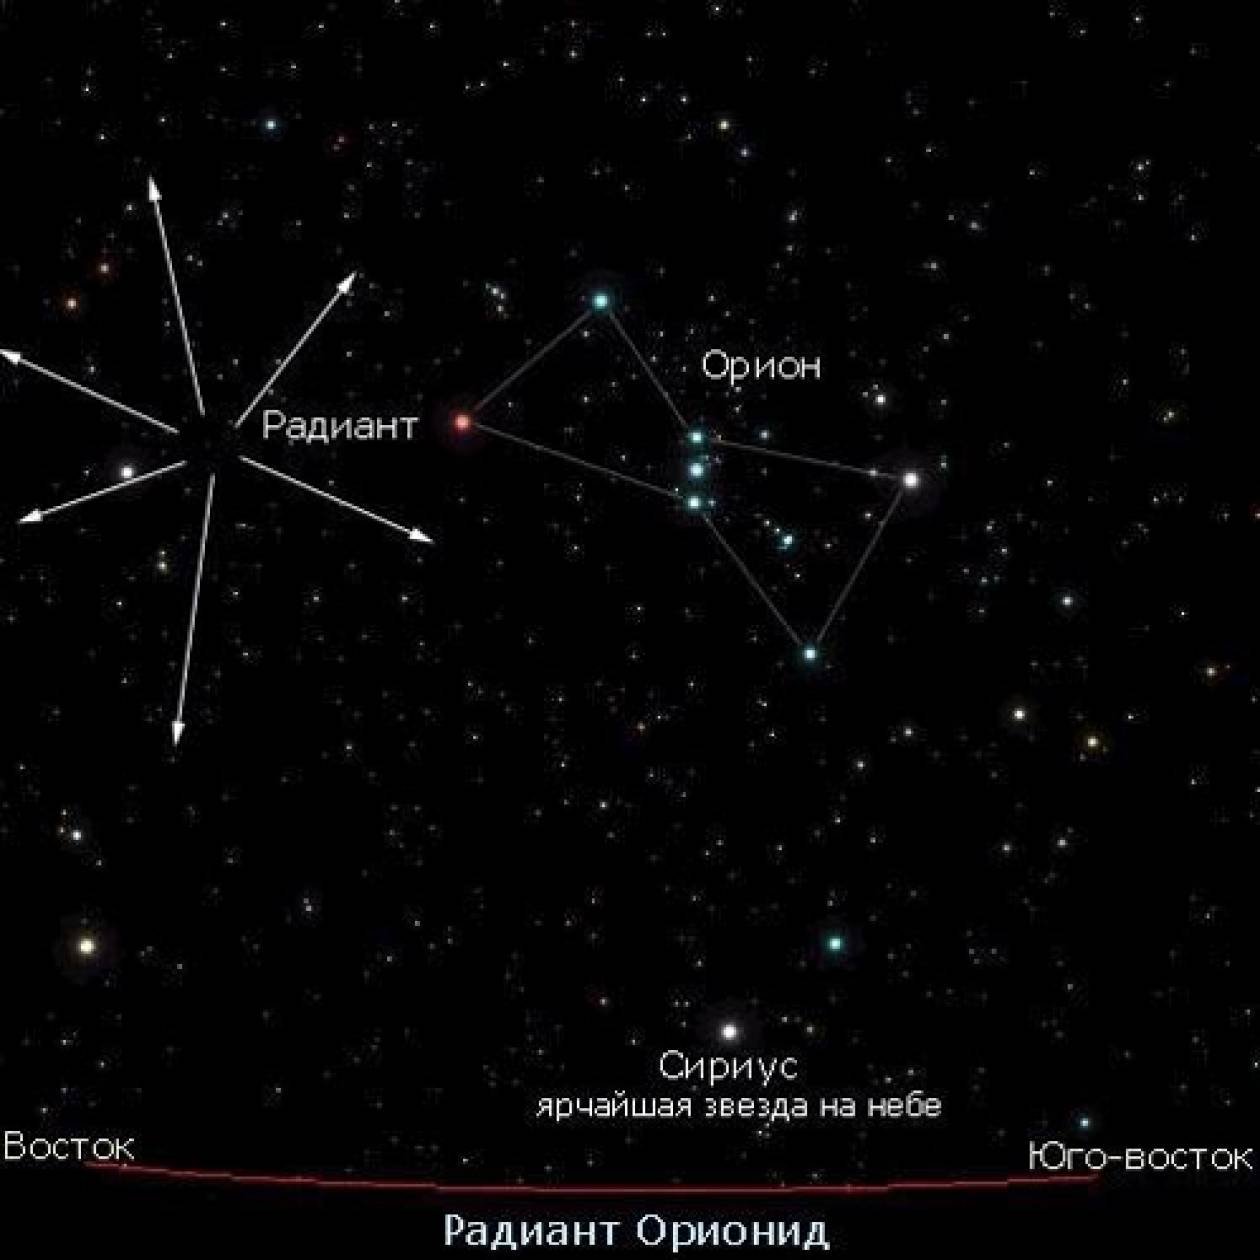 Название звезды на востоке. Ореон Созвездие самая яркая звезда. Сириус и Орион на Звездном небе. Созвездие Ориона и Сириус на карте звездного. Созвездие Орион и Сириус на карте звездного неба.